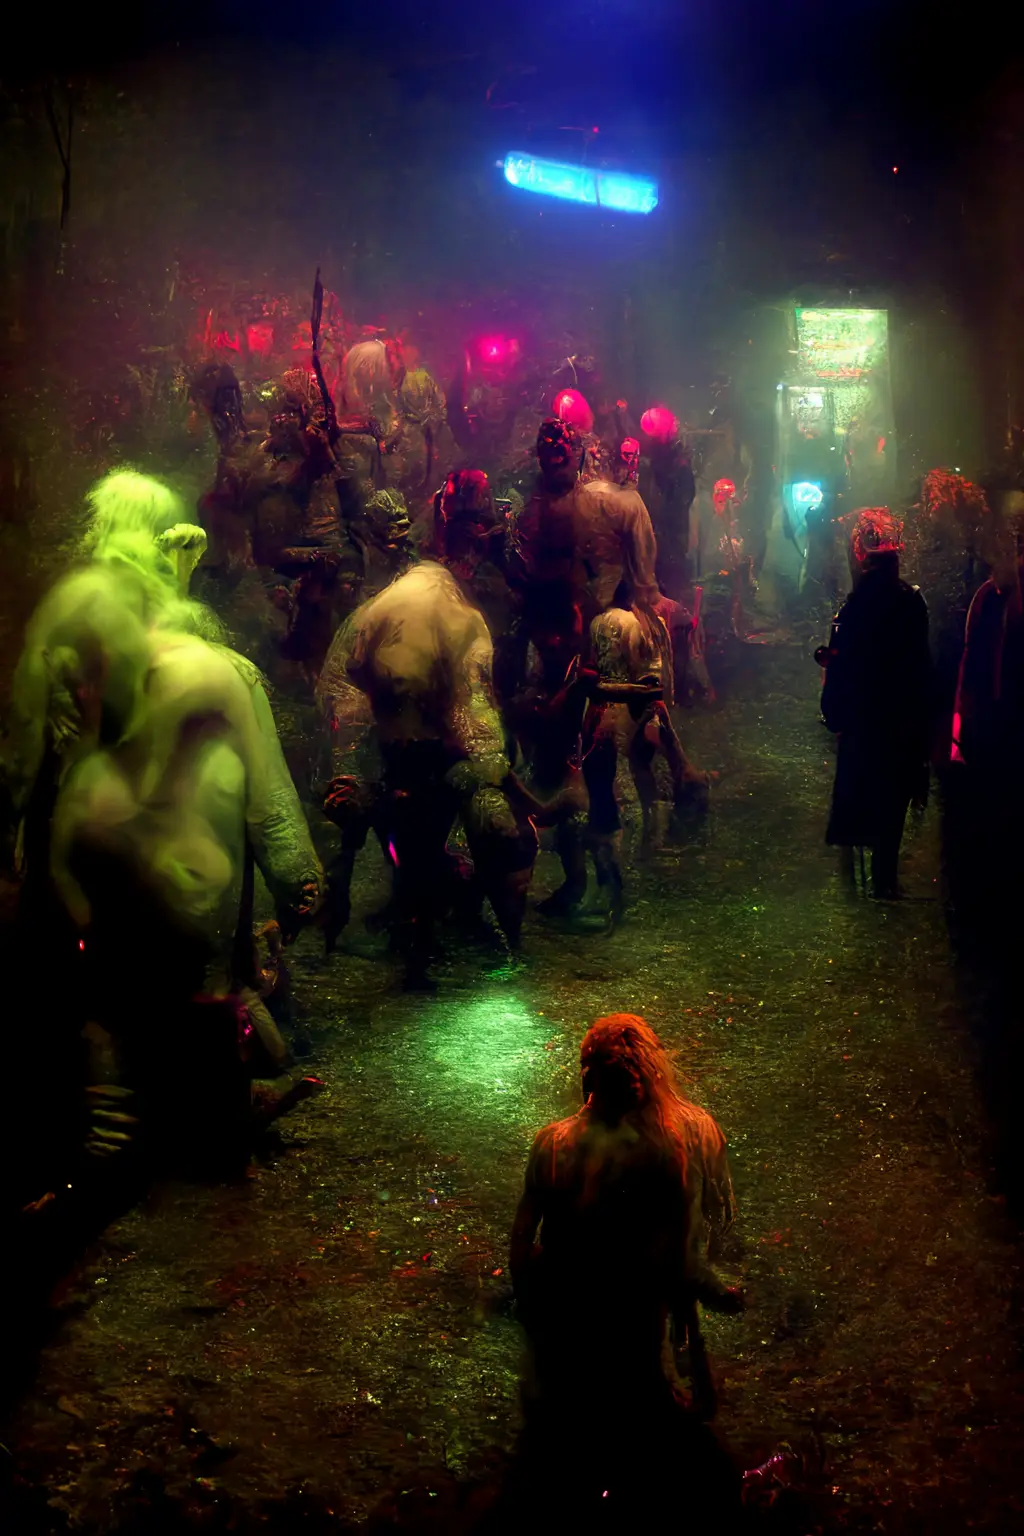 club-weilding bundling orcs